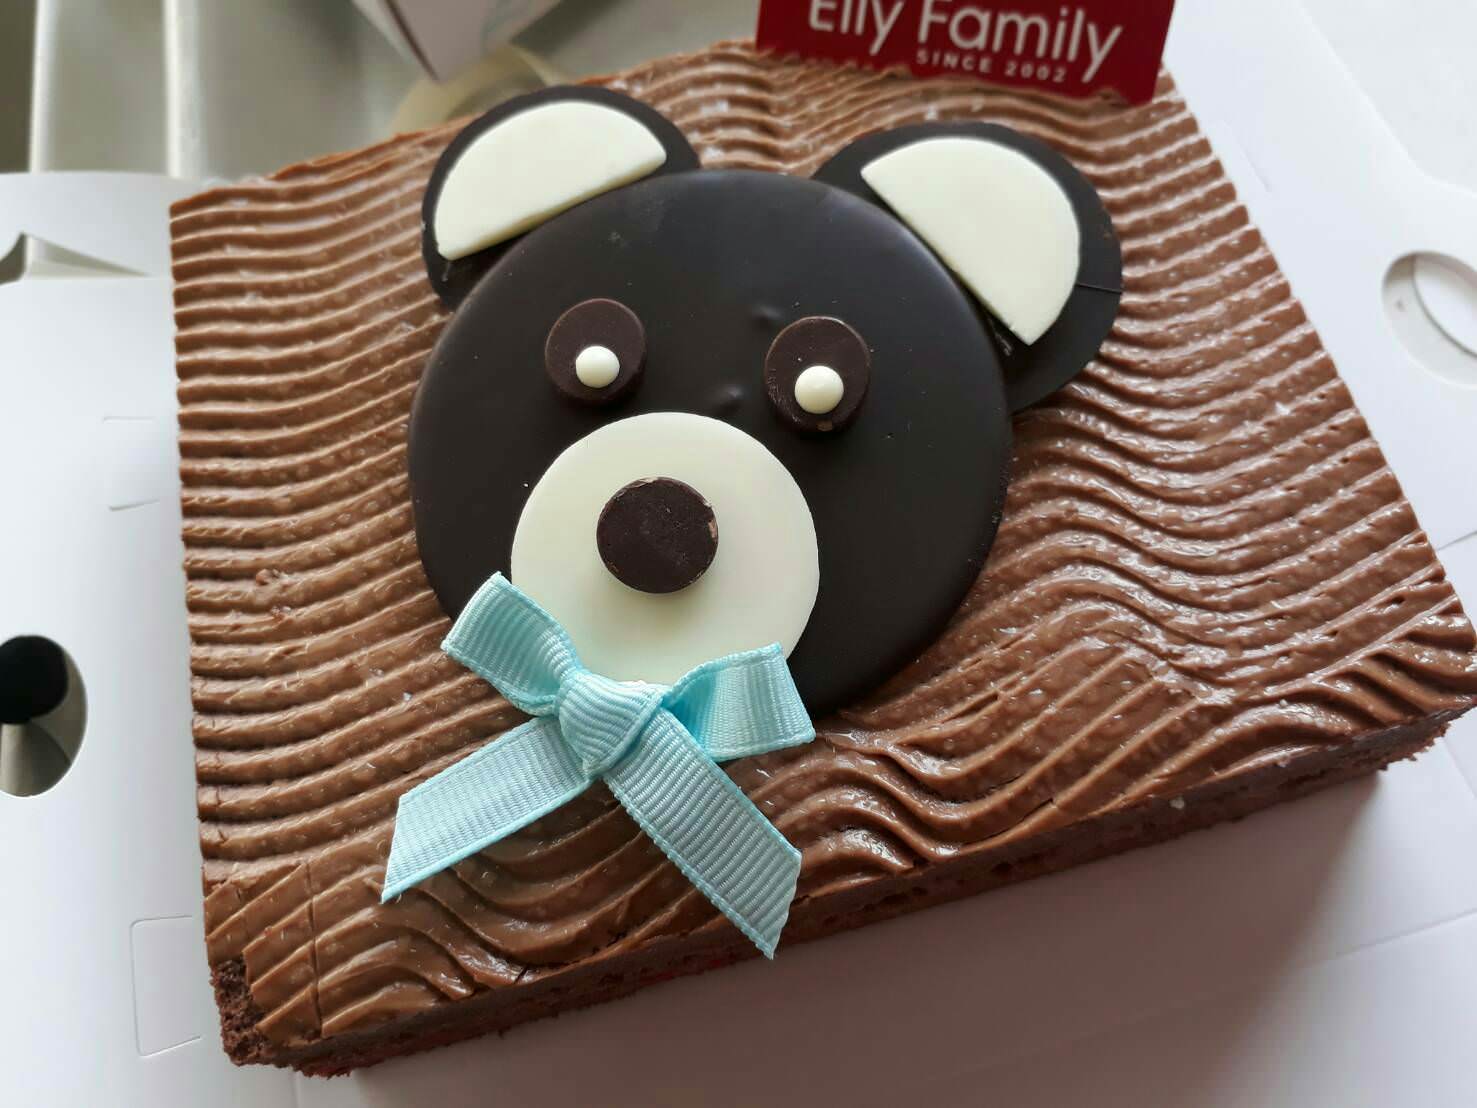 彌月蛋糕,彌月蛋糕試吃,彌月蛋糕推薦,台北彌月蛋糕,新竹彌月蛋糕,艾立蛋糕,生巧克力蛋糕,腳丫蛋糕,蛋糕捲,蛋糕禮盒,Elly Family